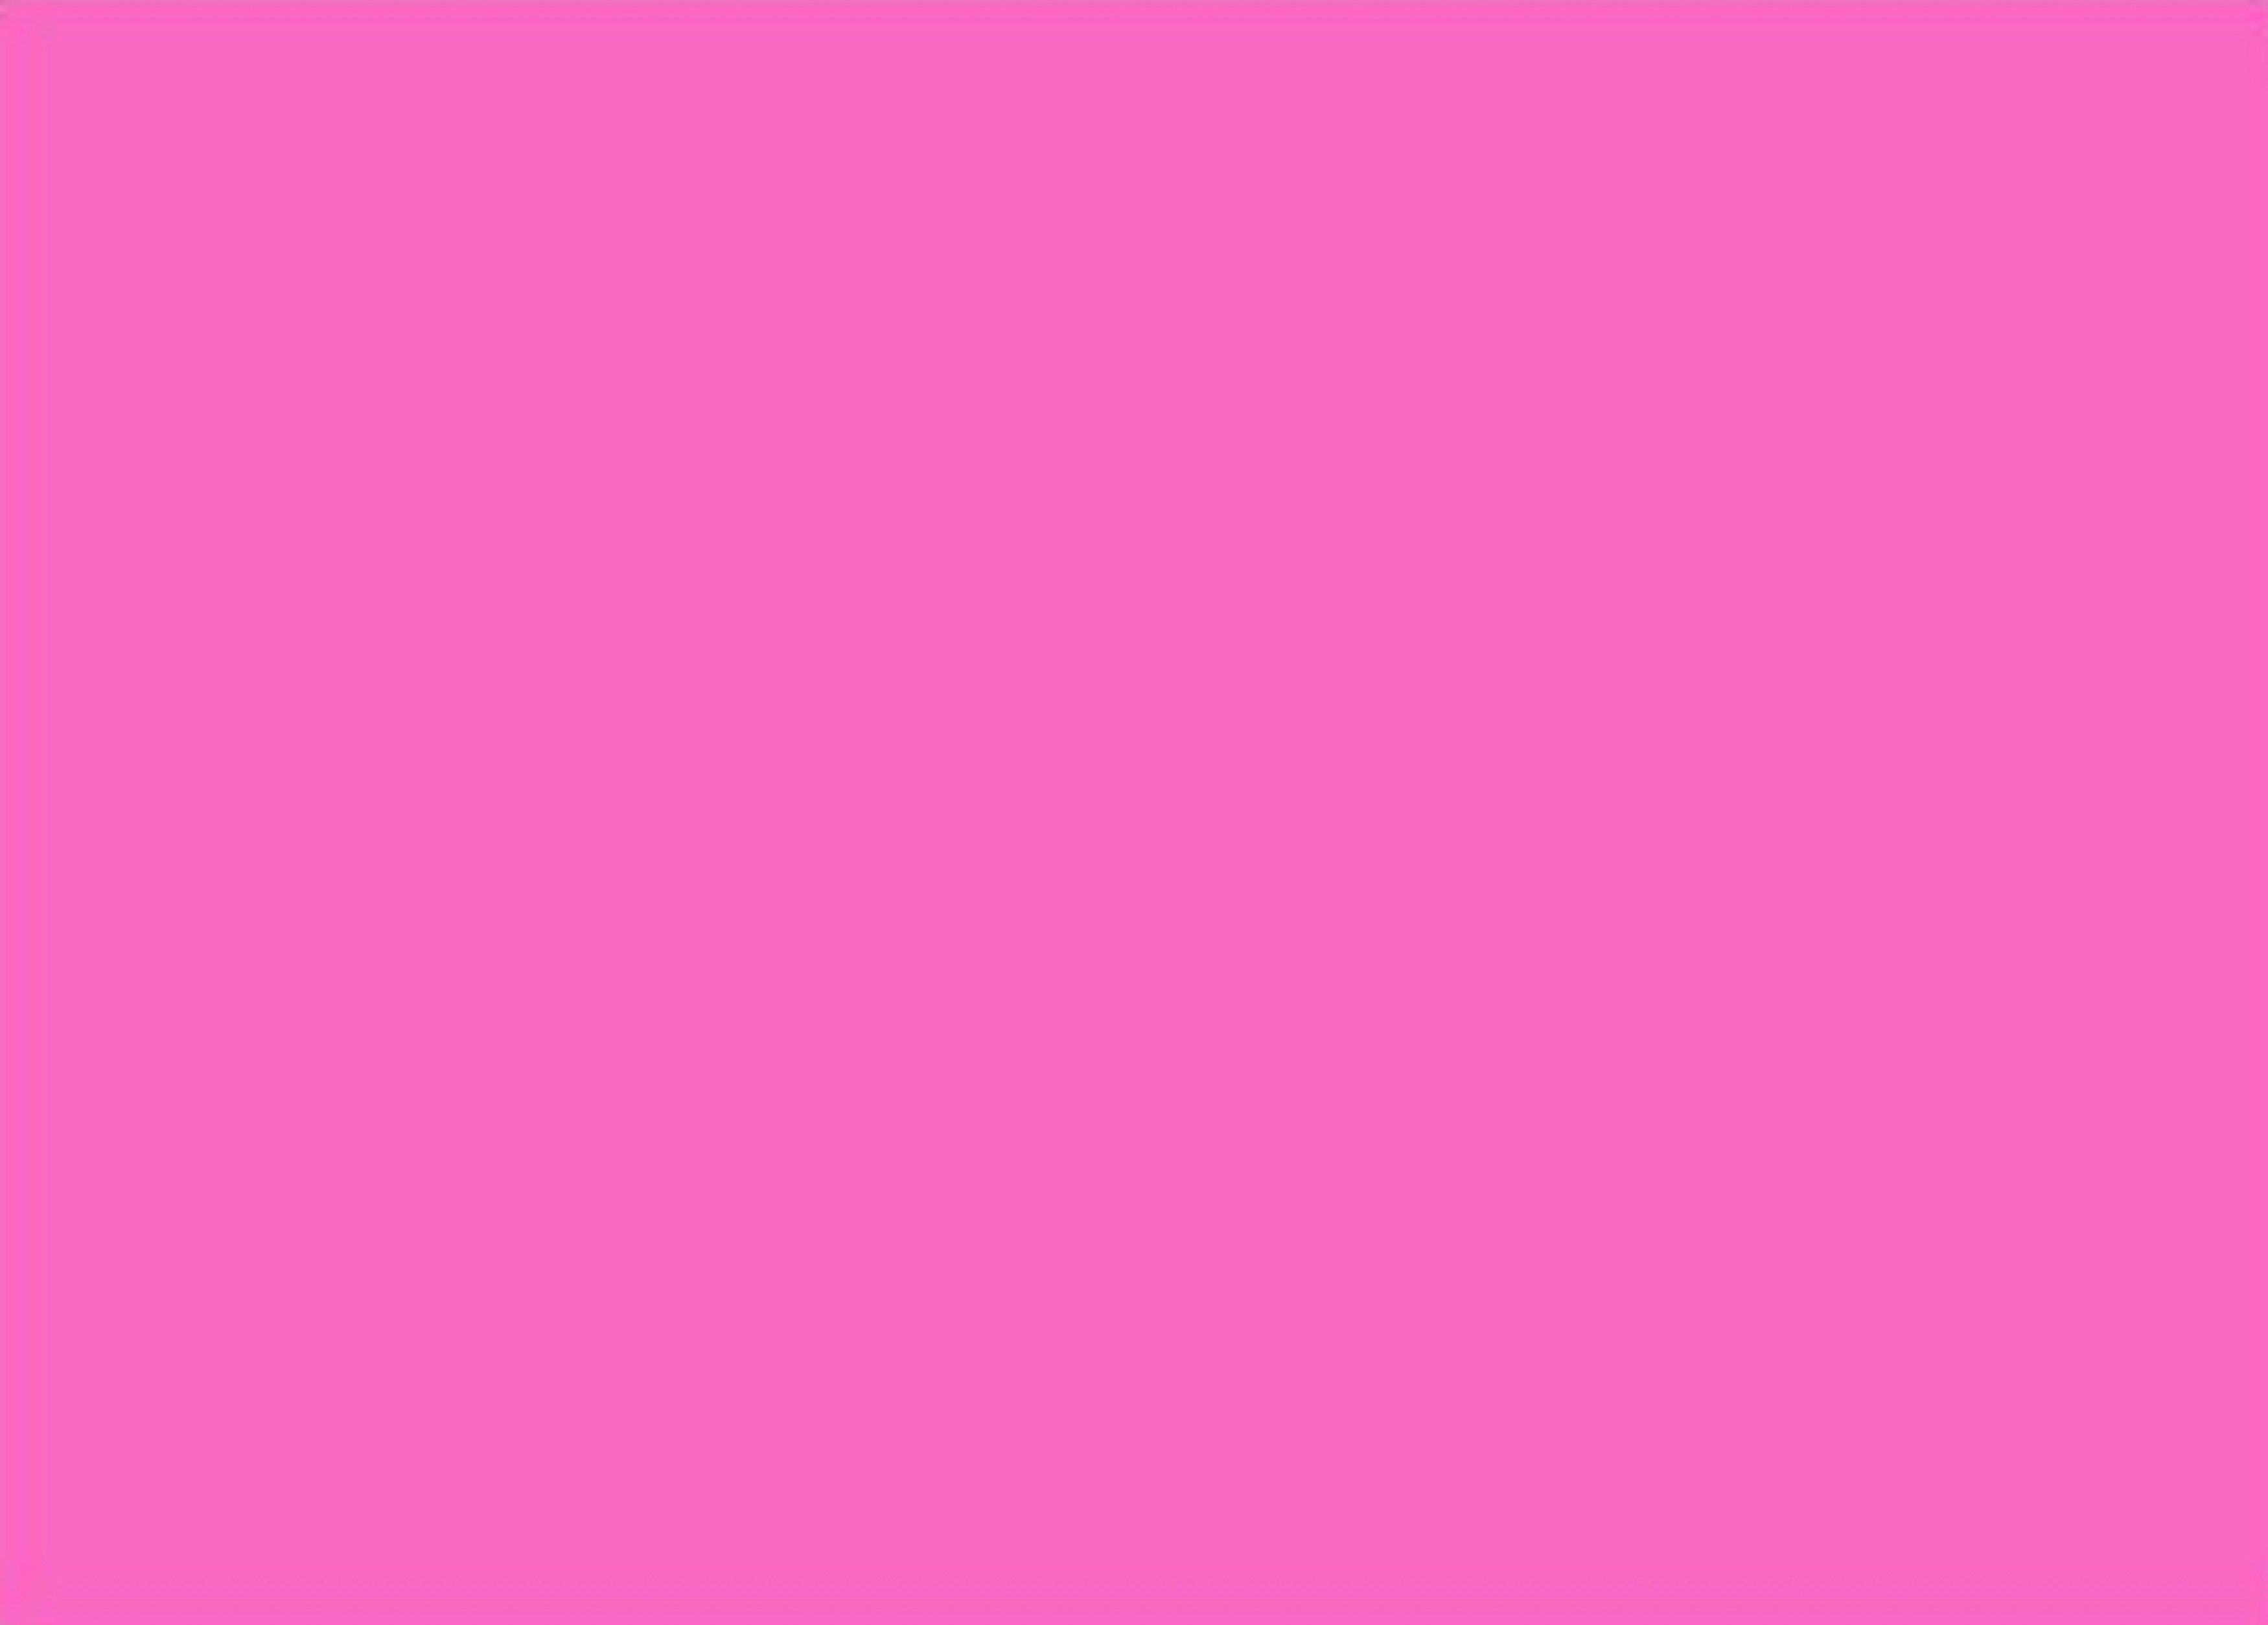 Hình nền máy tính màu hồng sáng với tính thẩm mỹ đẳng cấp sẽ mang đến cho bạn cảm giác làm việc vô cùng sảng khoái. Sự kết hợp giữa màu hồng sáng tươi trẻ và độ phân giải cao sẽ biến bức ảnh này thành một nơi hạnh phúc để làm việc.